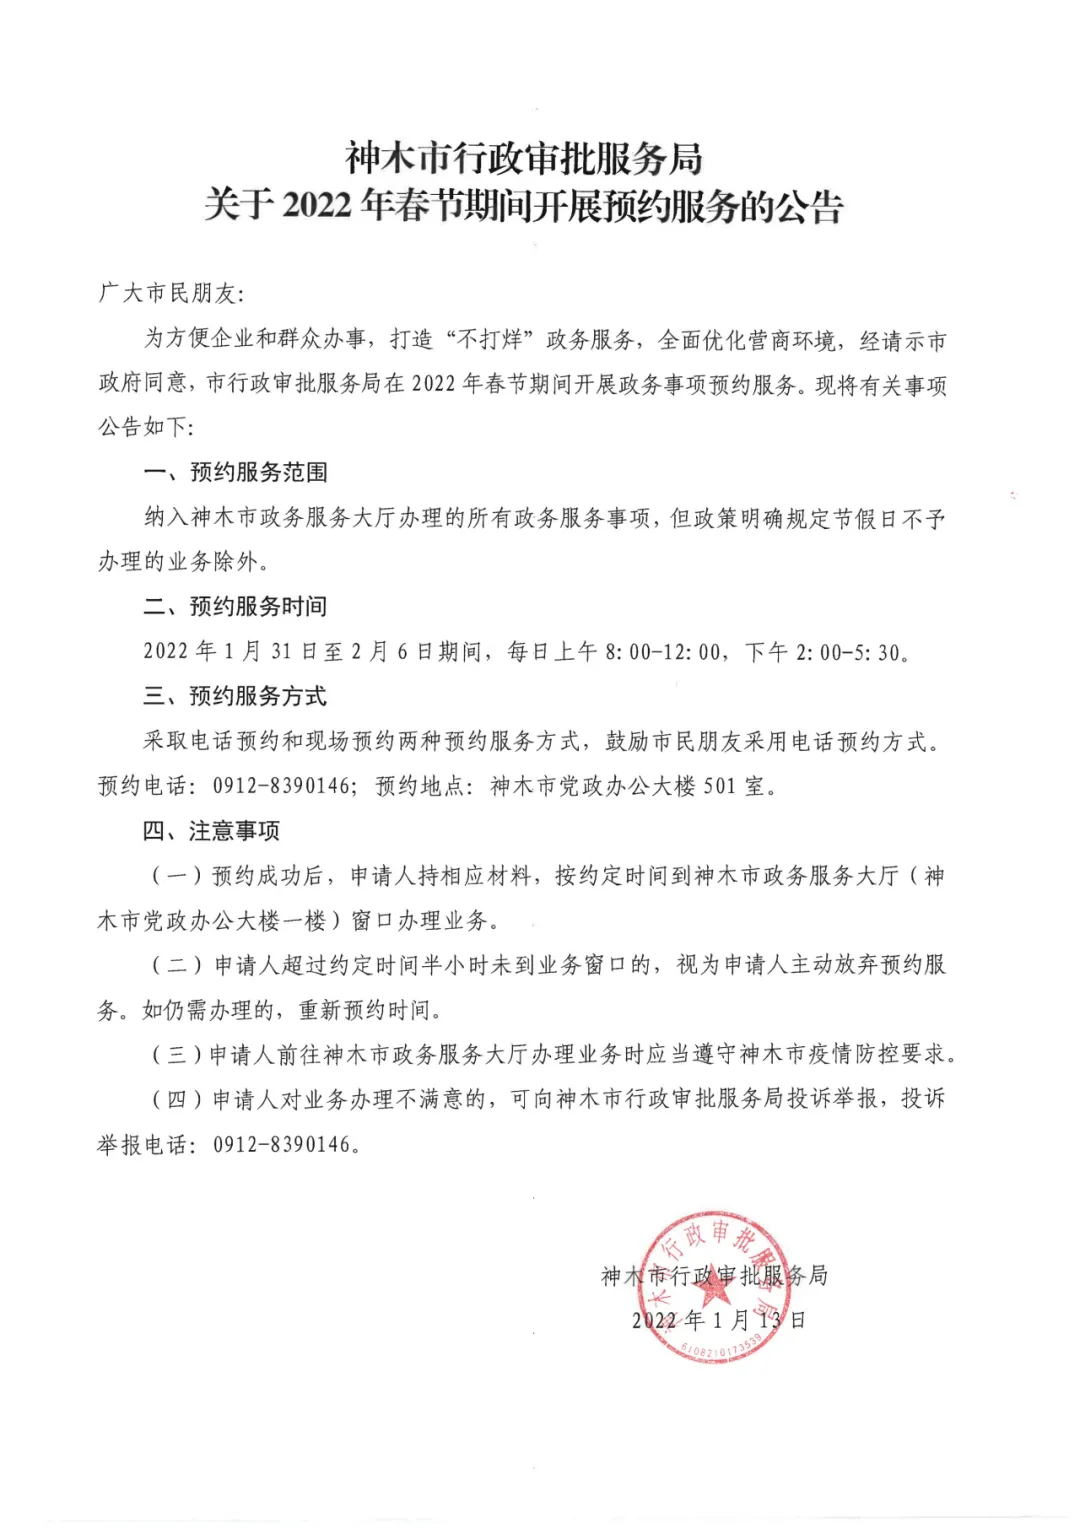 神木市行政审批服务局关于2022年春节期间开展预约服务的公告